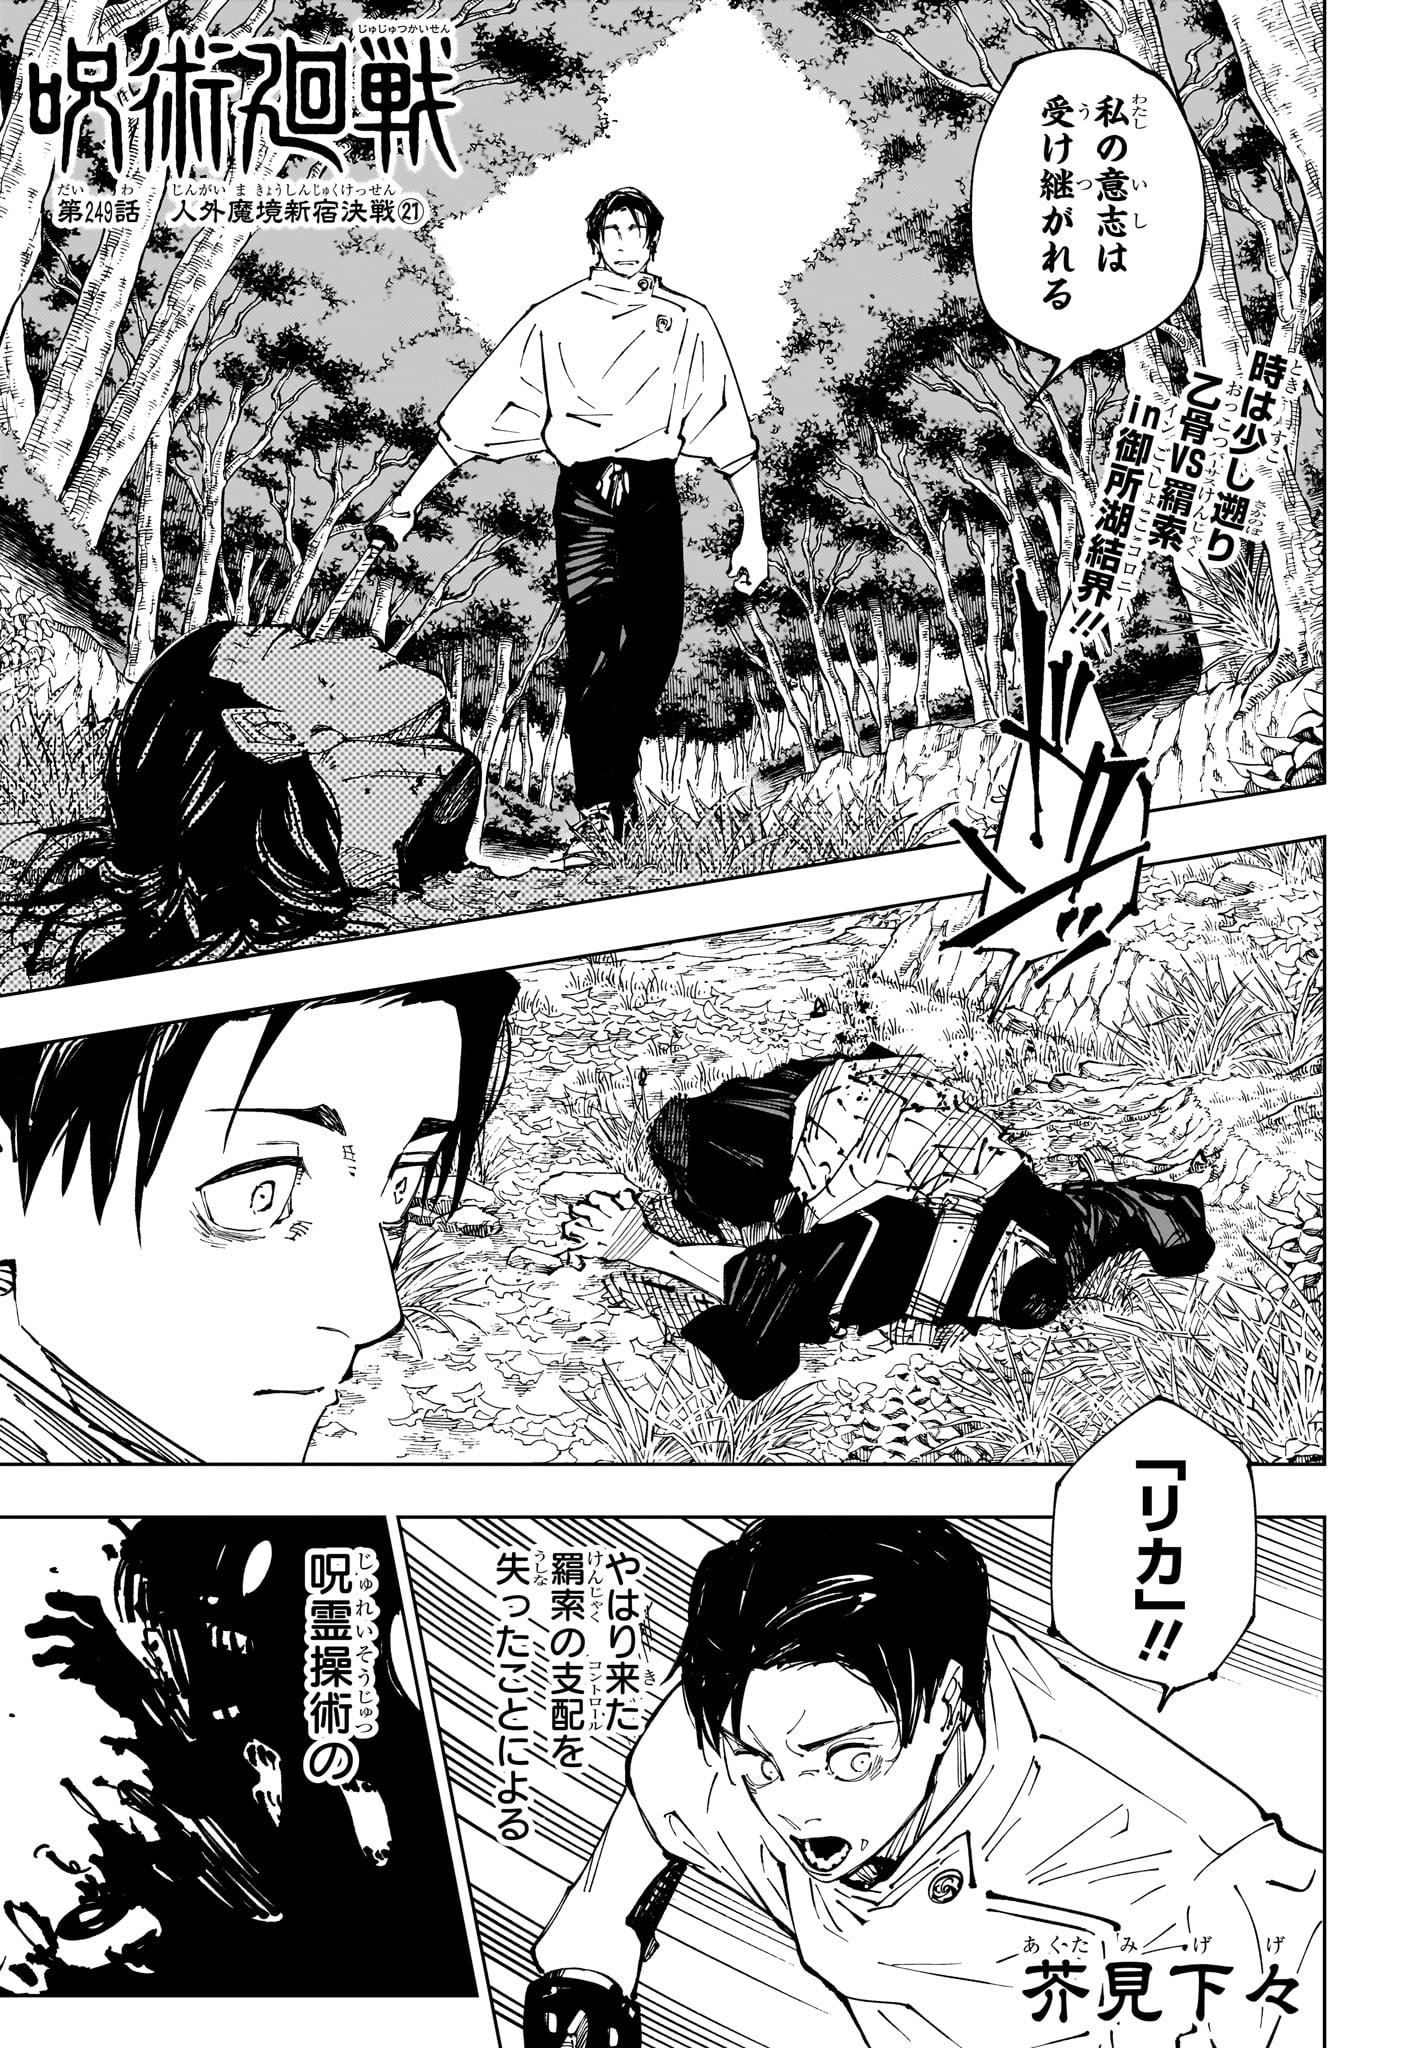 Jujutsu Kaisen - Chapter 249 - Page 1